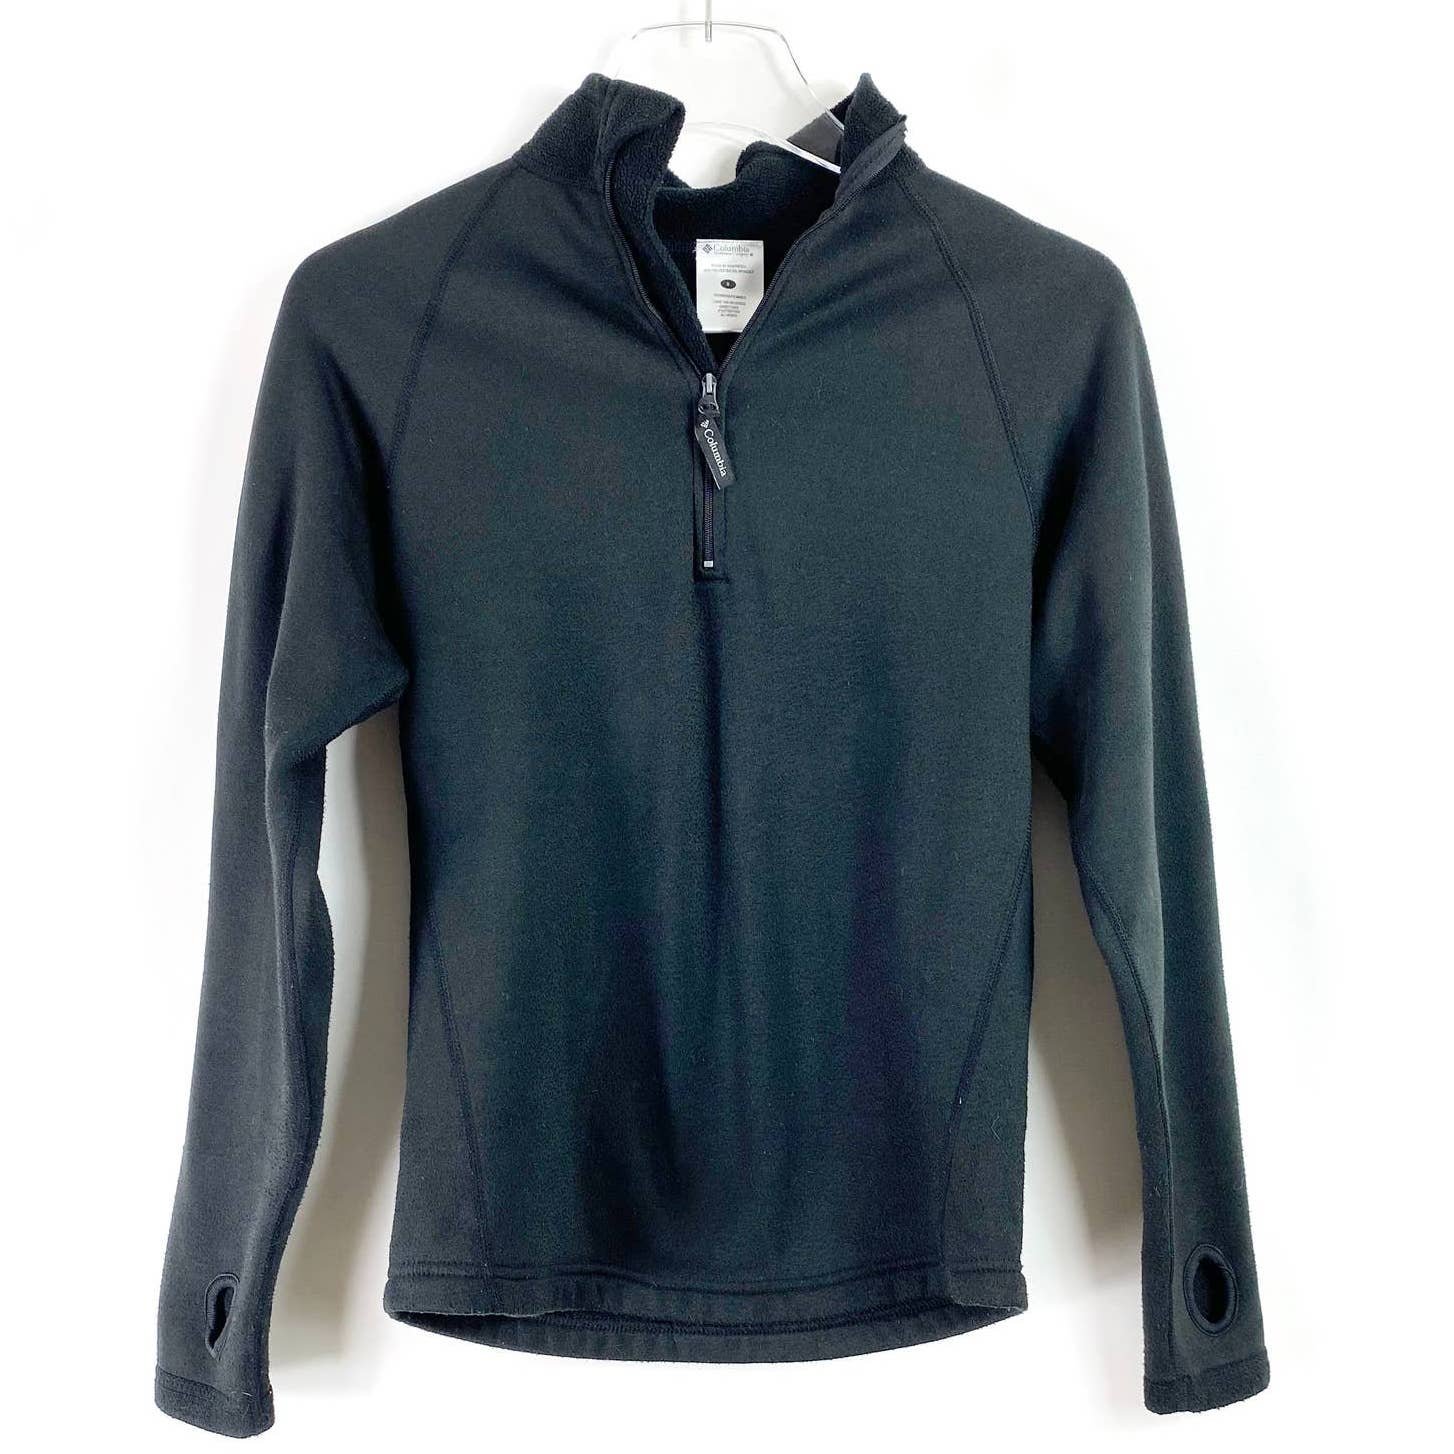 Discounted COLUMBIA Black Fleece Half Zip Jacket owXVttSSL Zero Profit 